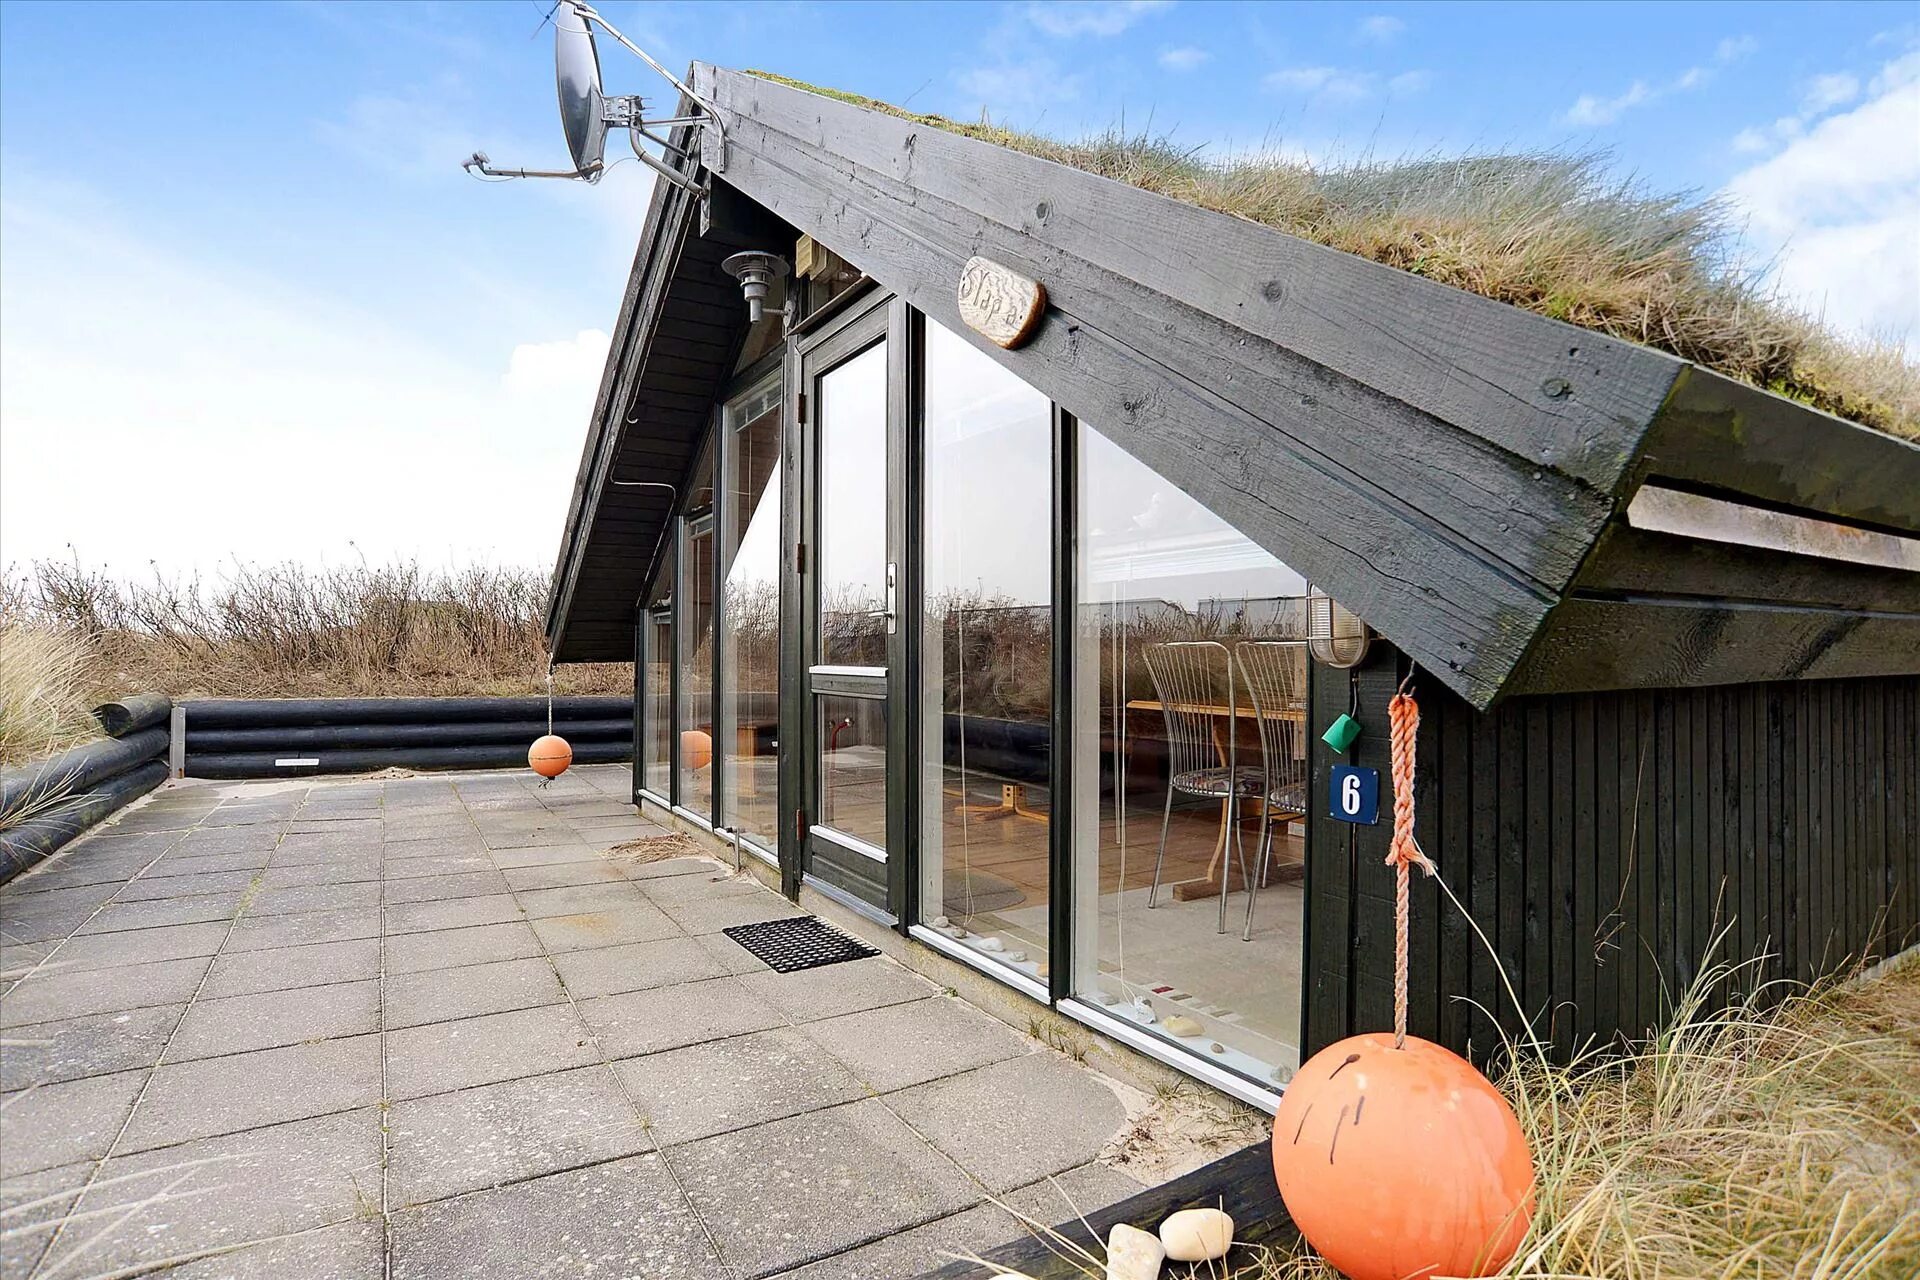 Земляная крыша. Дом с Земляной крышей. Крыша из дерна. Земляная крыша в Дании технология.